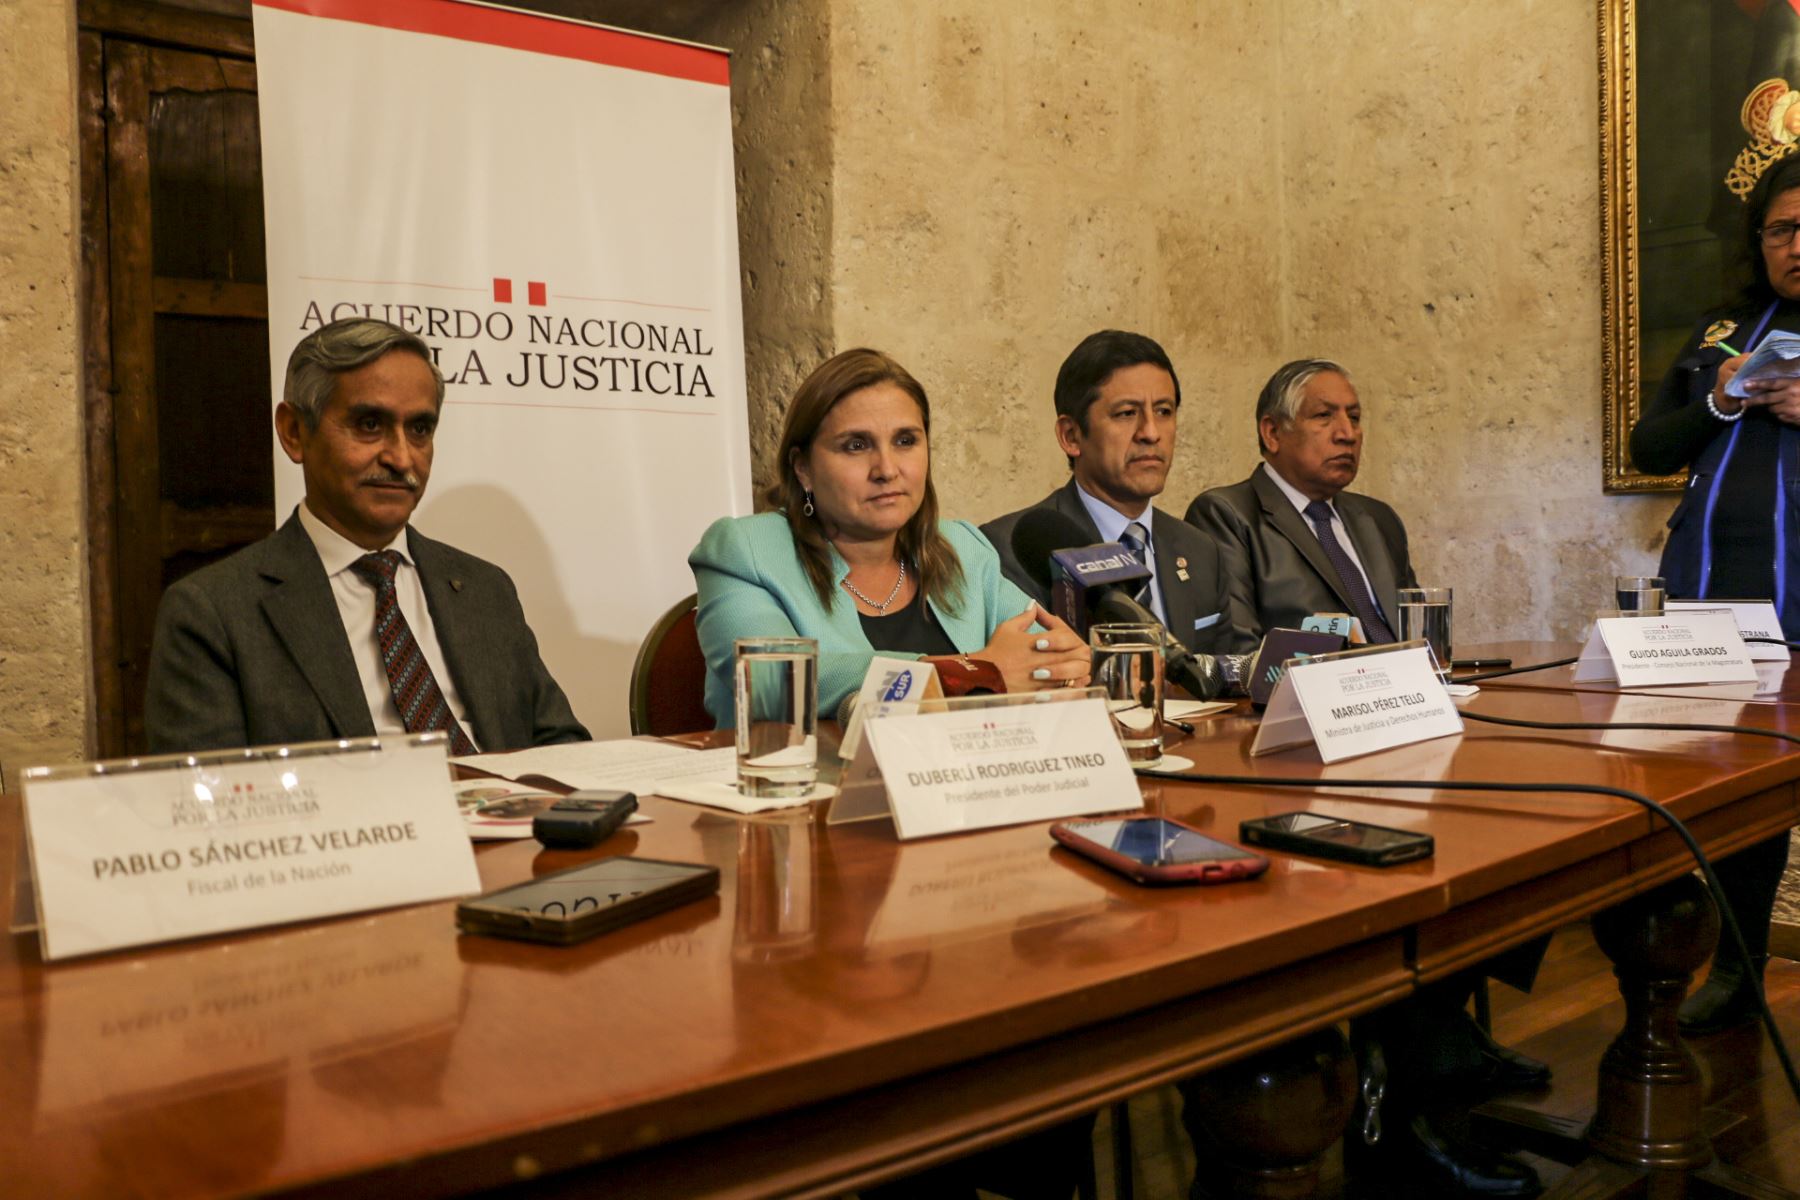 Acuerdo Nacional por la Justicia en Arequipa.